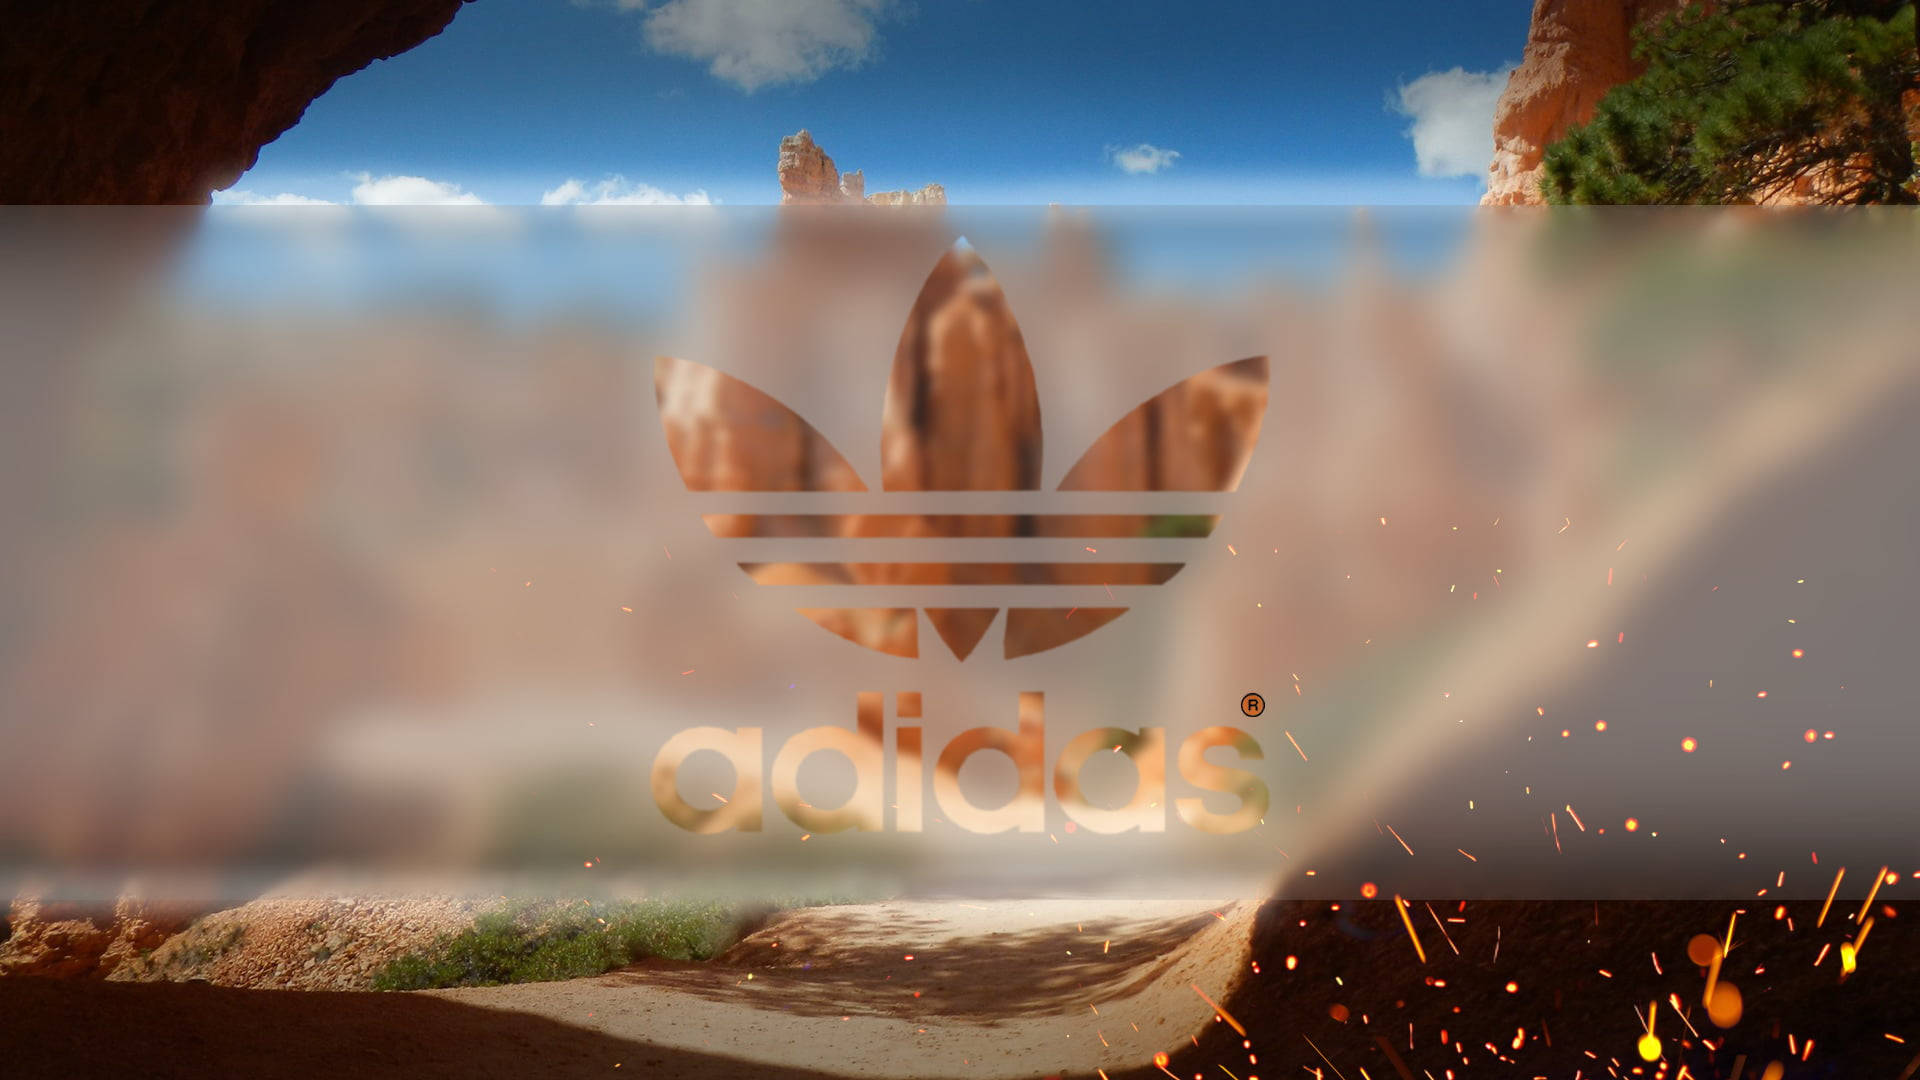 Adidas In Desert Art